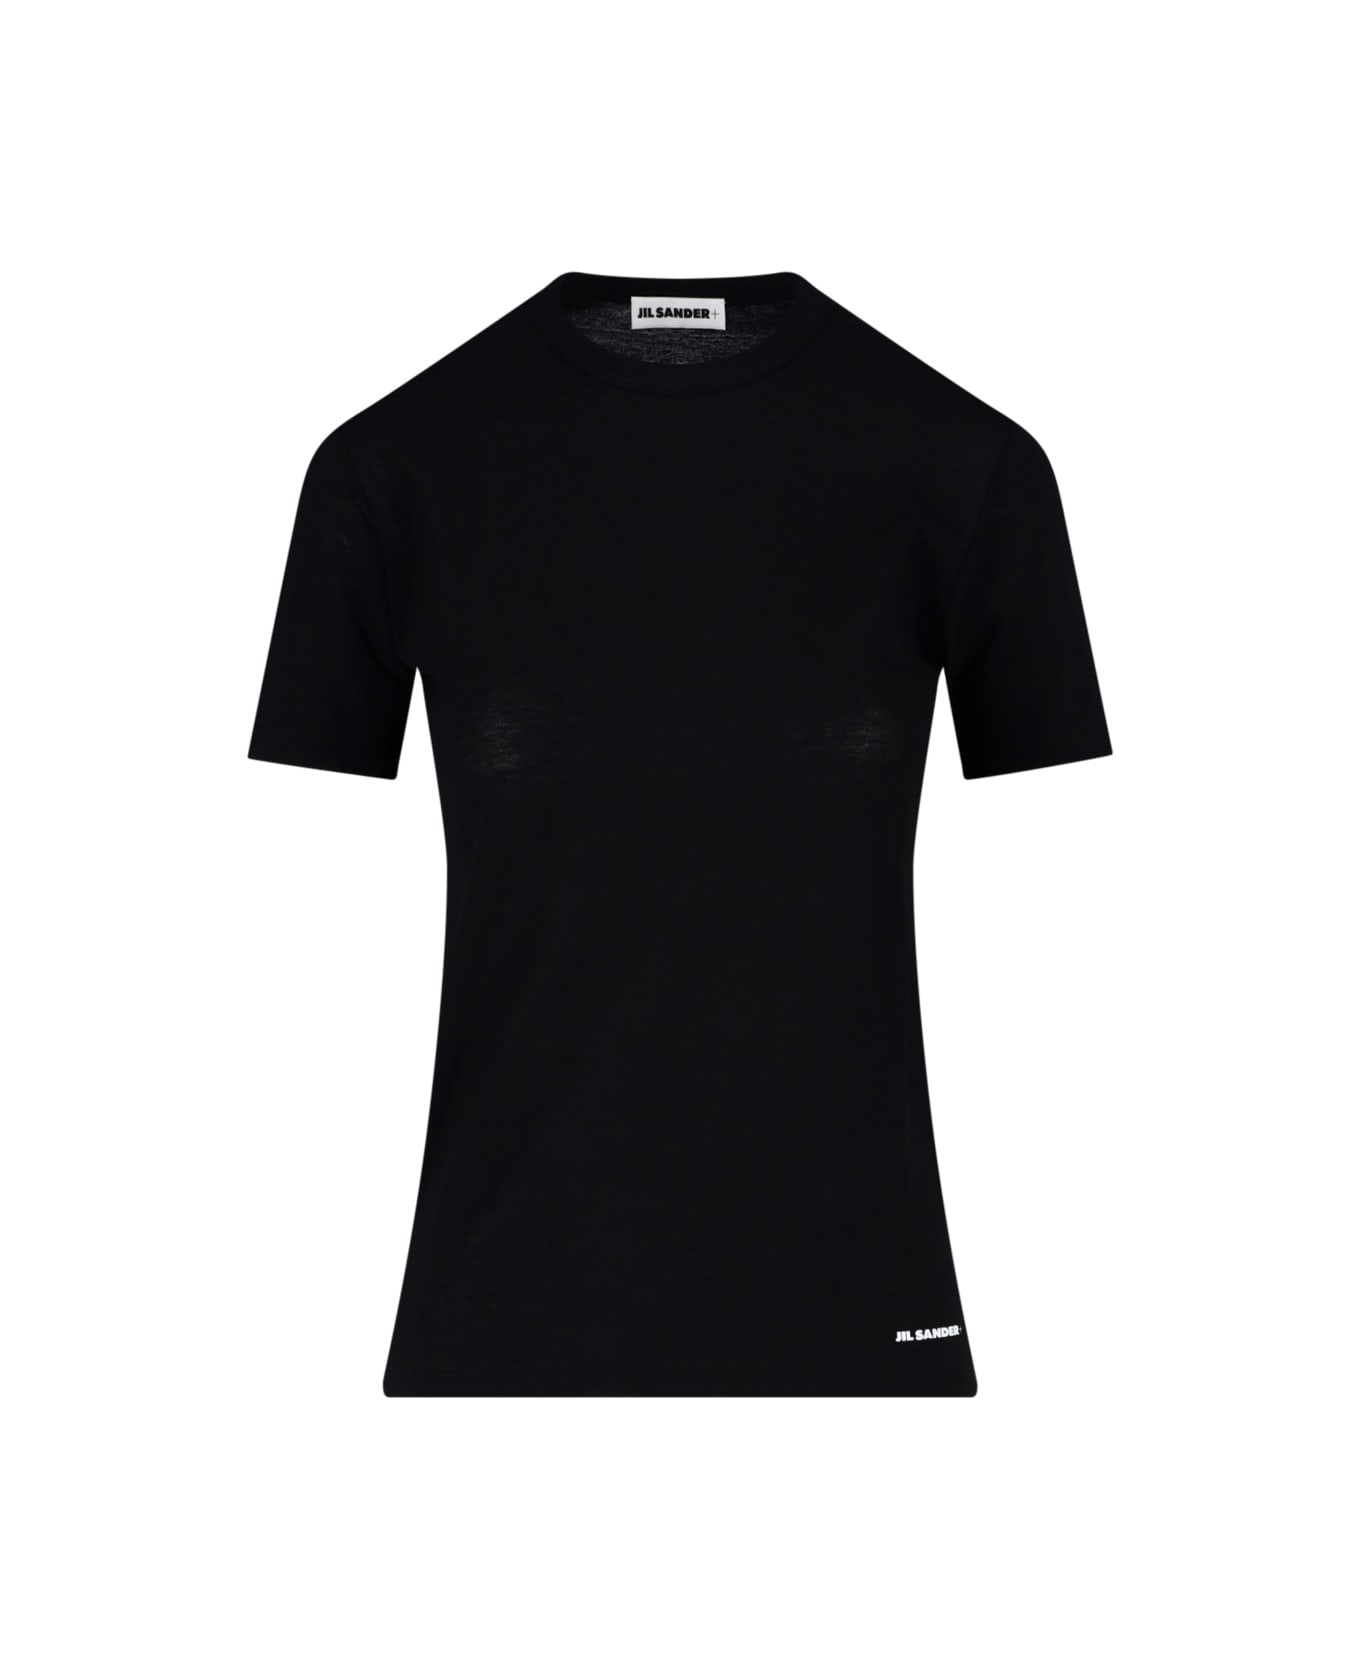 Jil Sander Classic T-shirt - Black Tシャツ